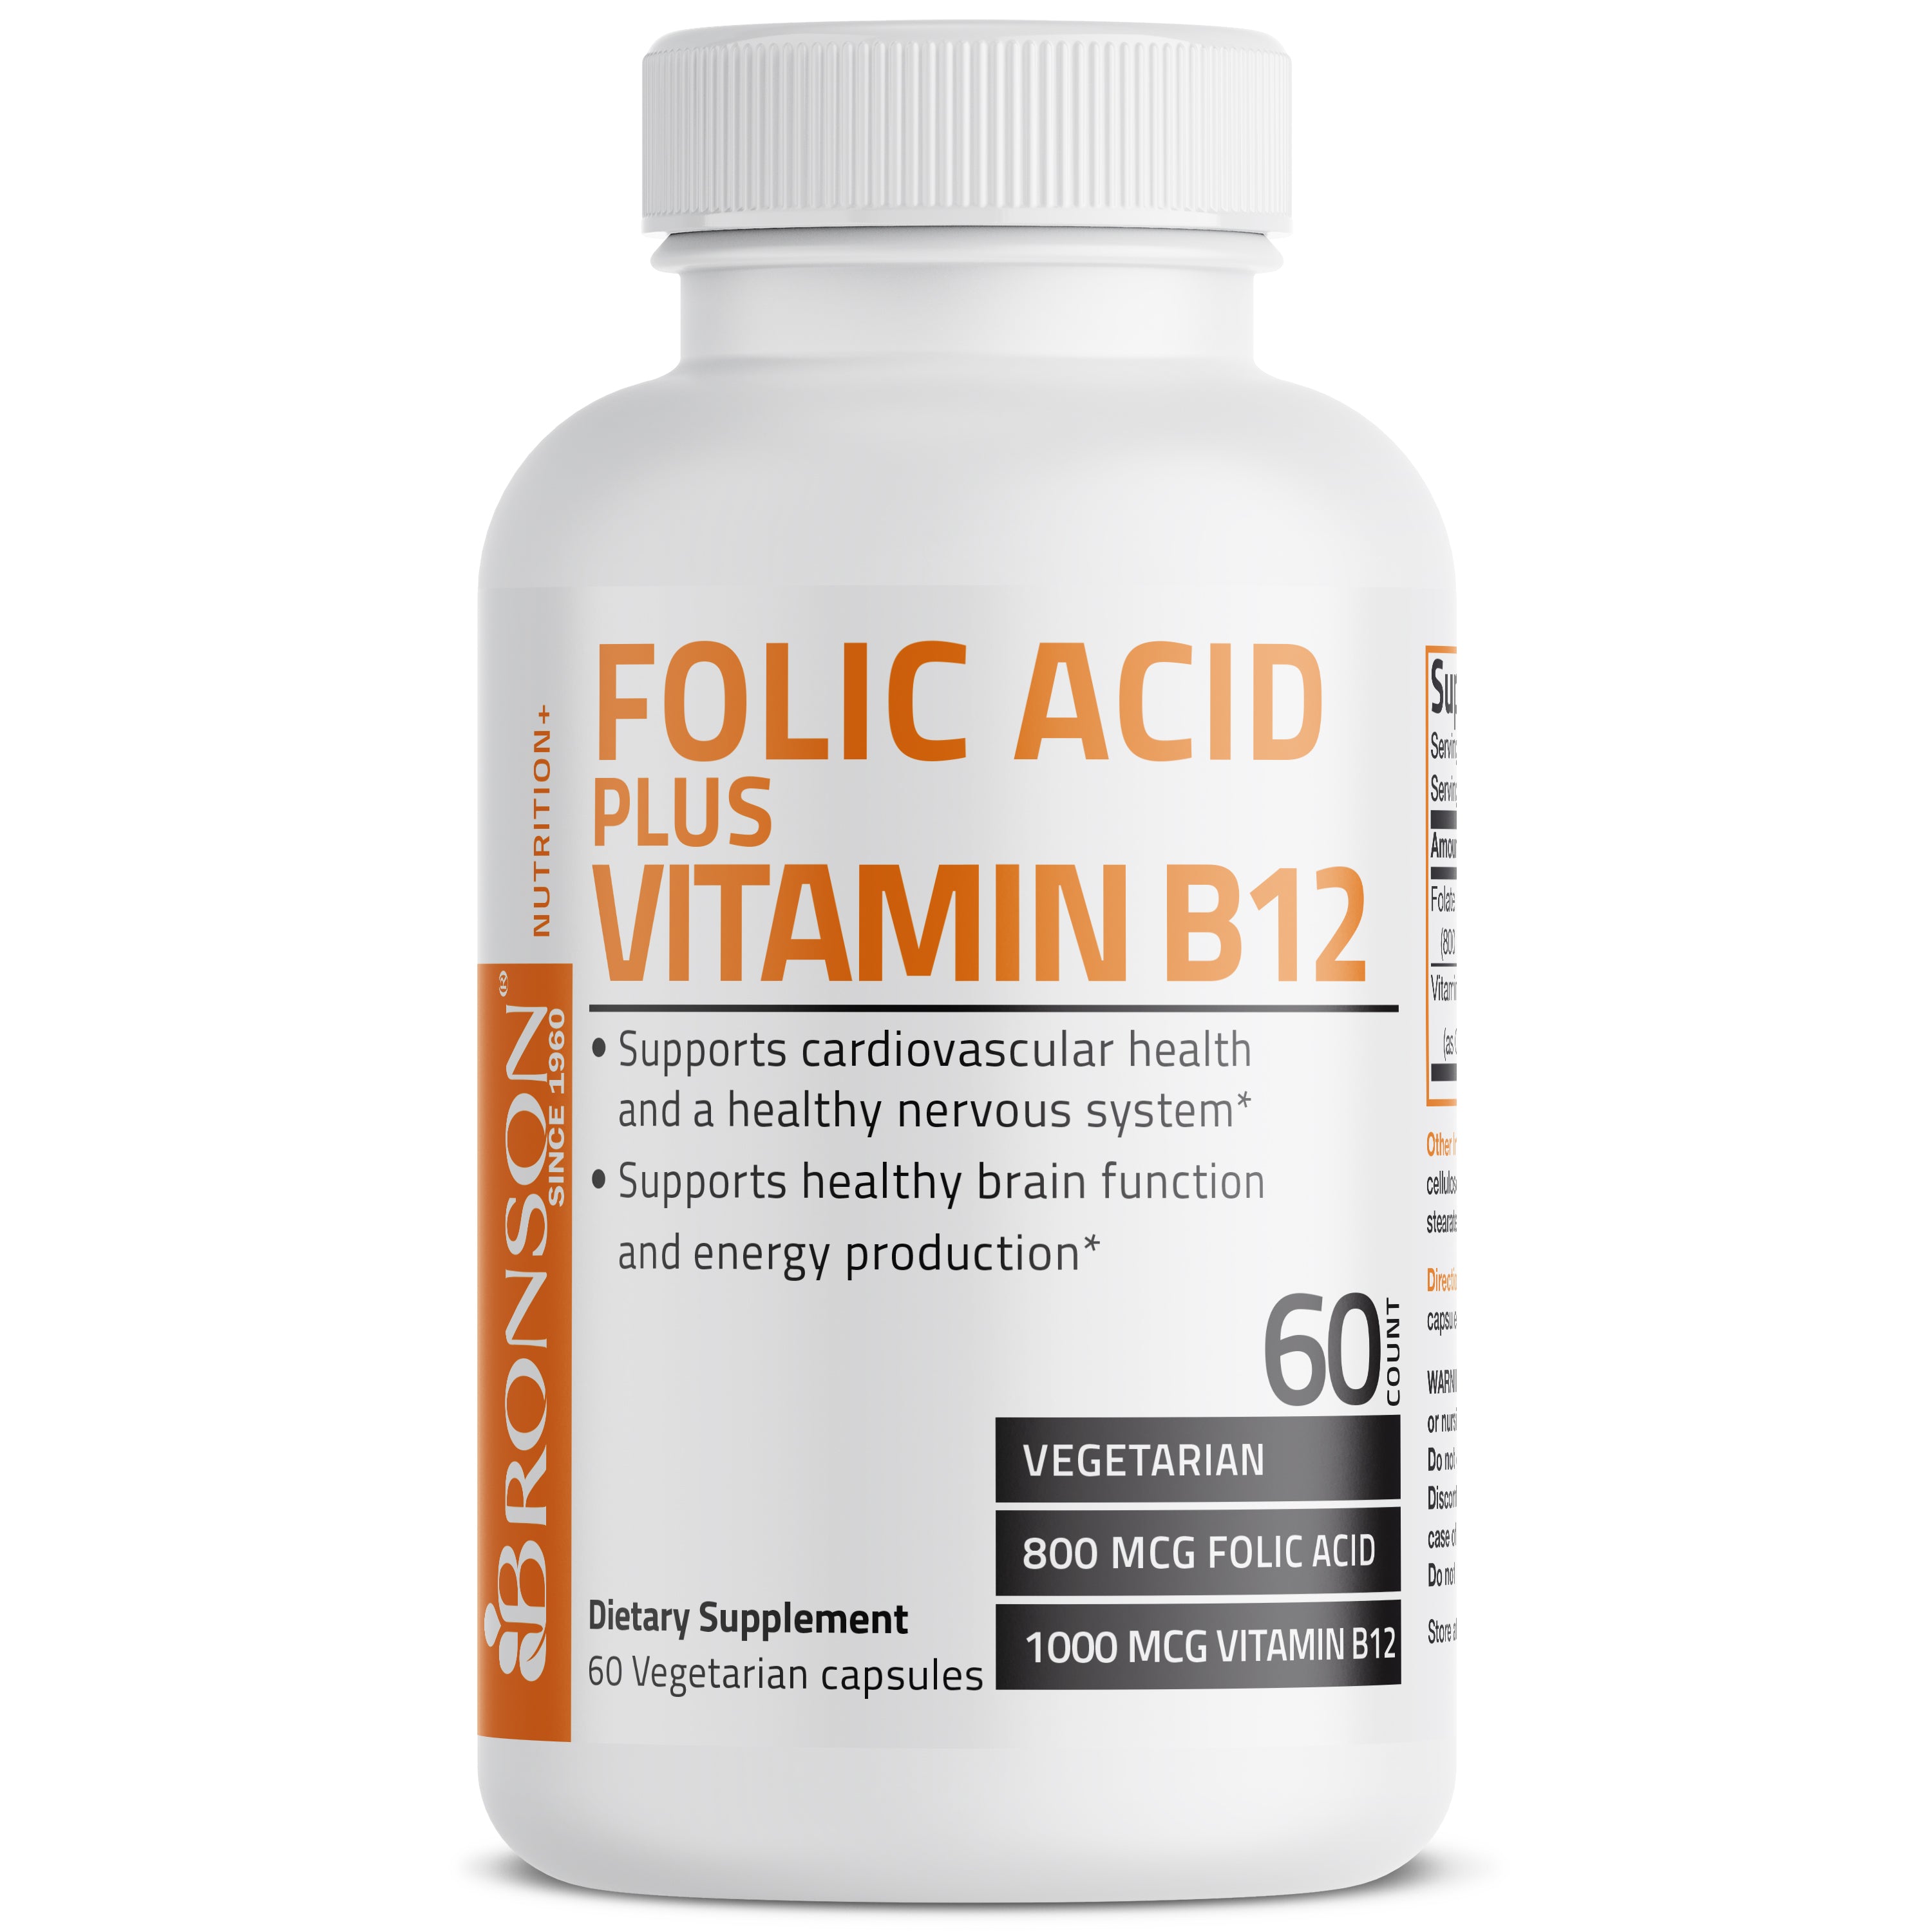 Folic Acid Plus Vitamin B12 - 60 Vegetarian Capsules view 3 of 6